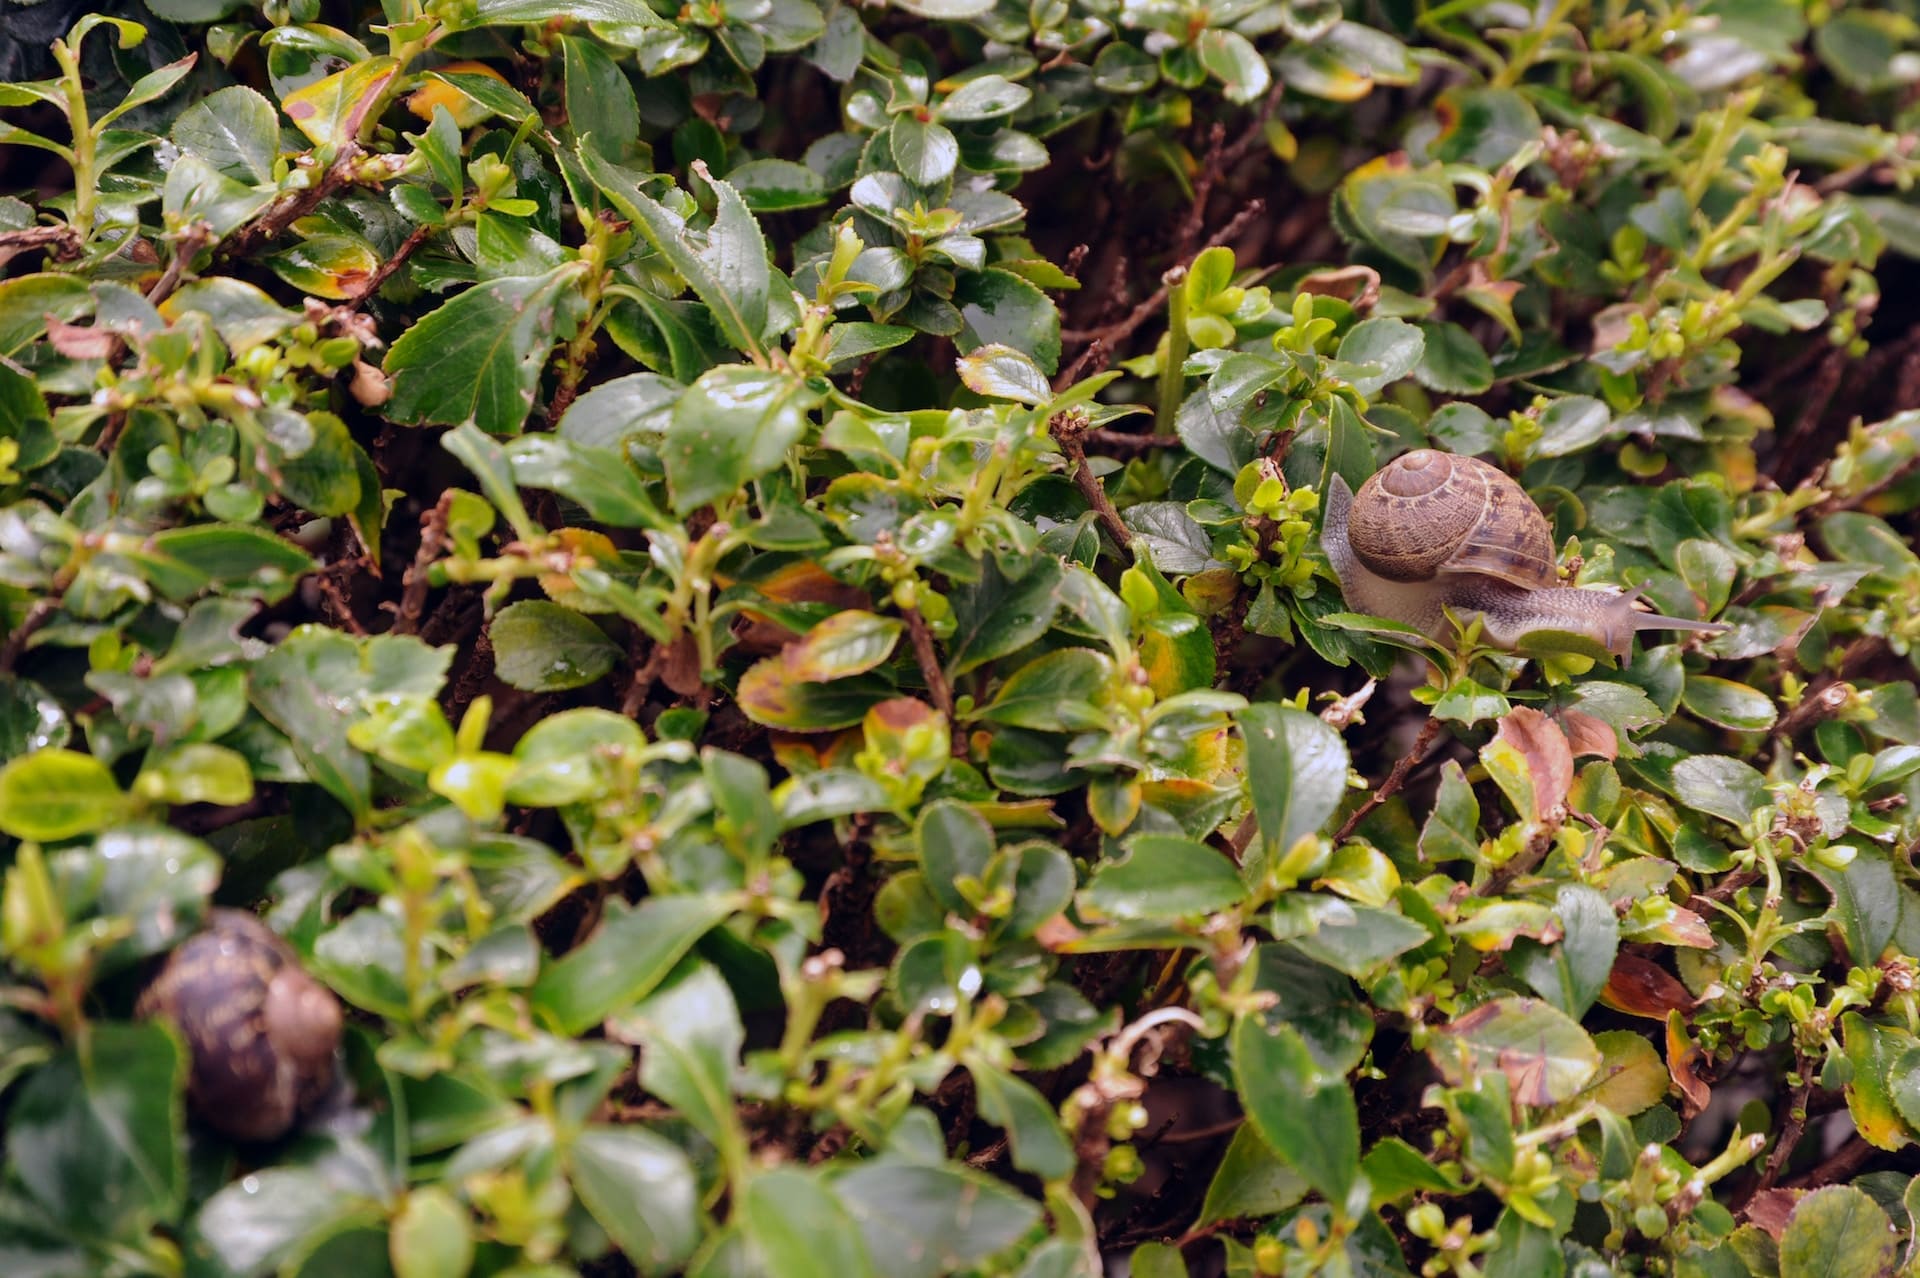 Snails on a bush in Sunnyvale, California.